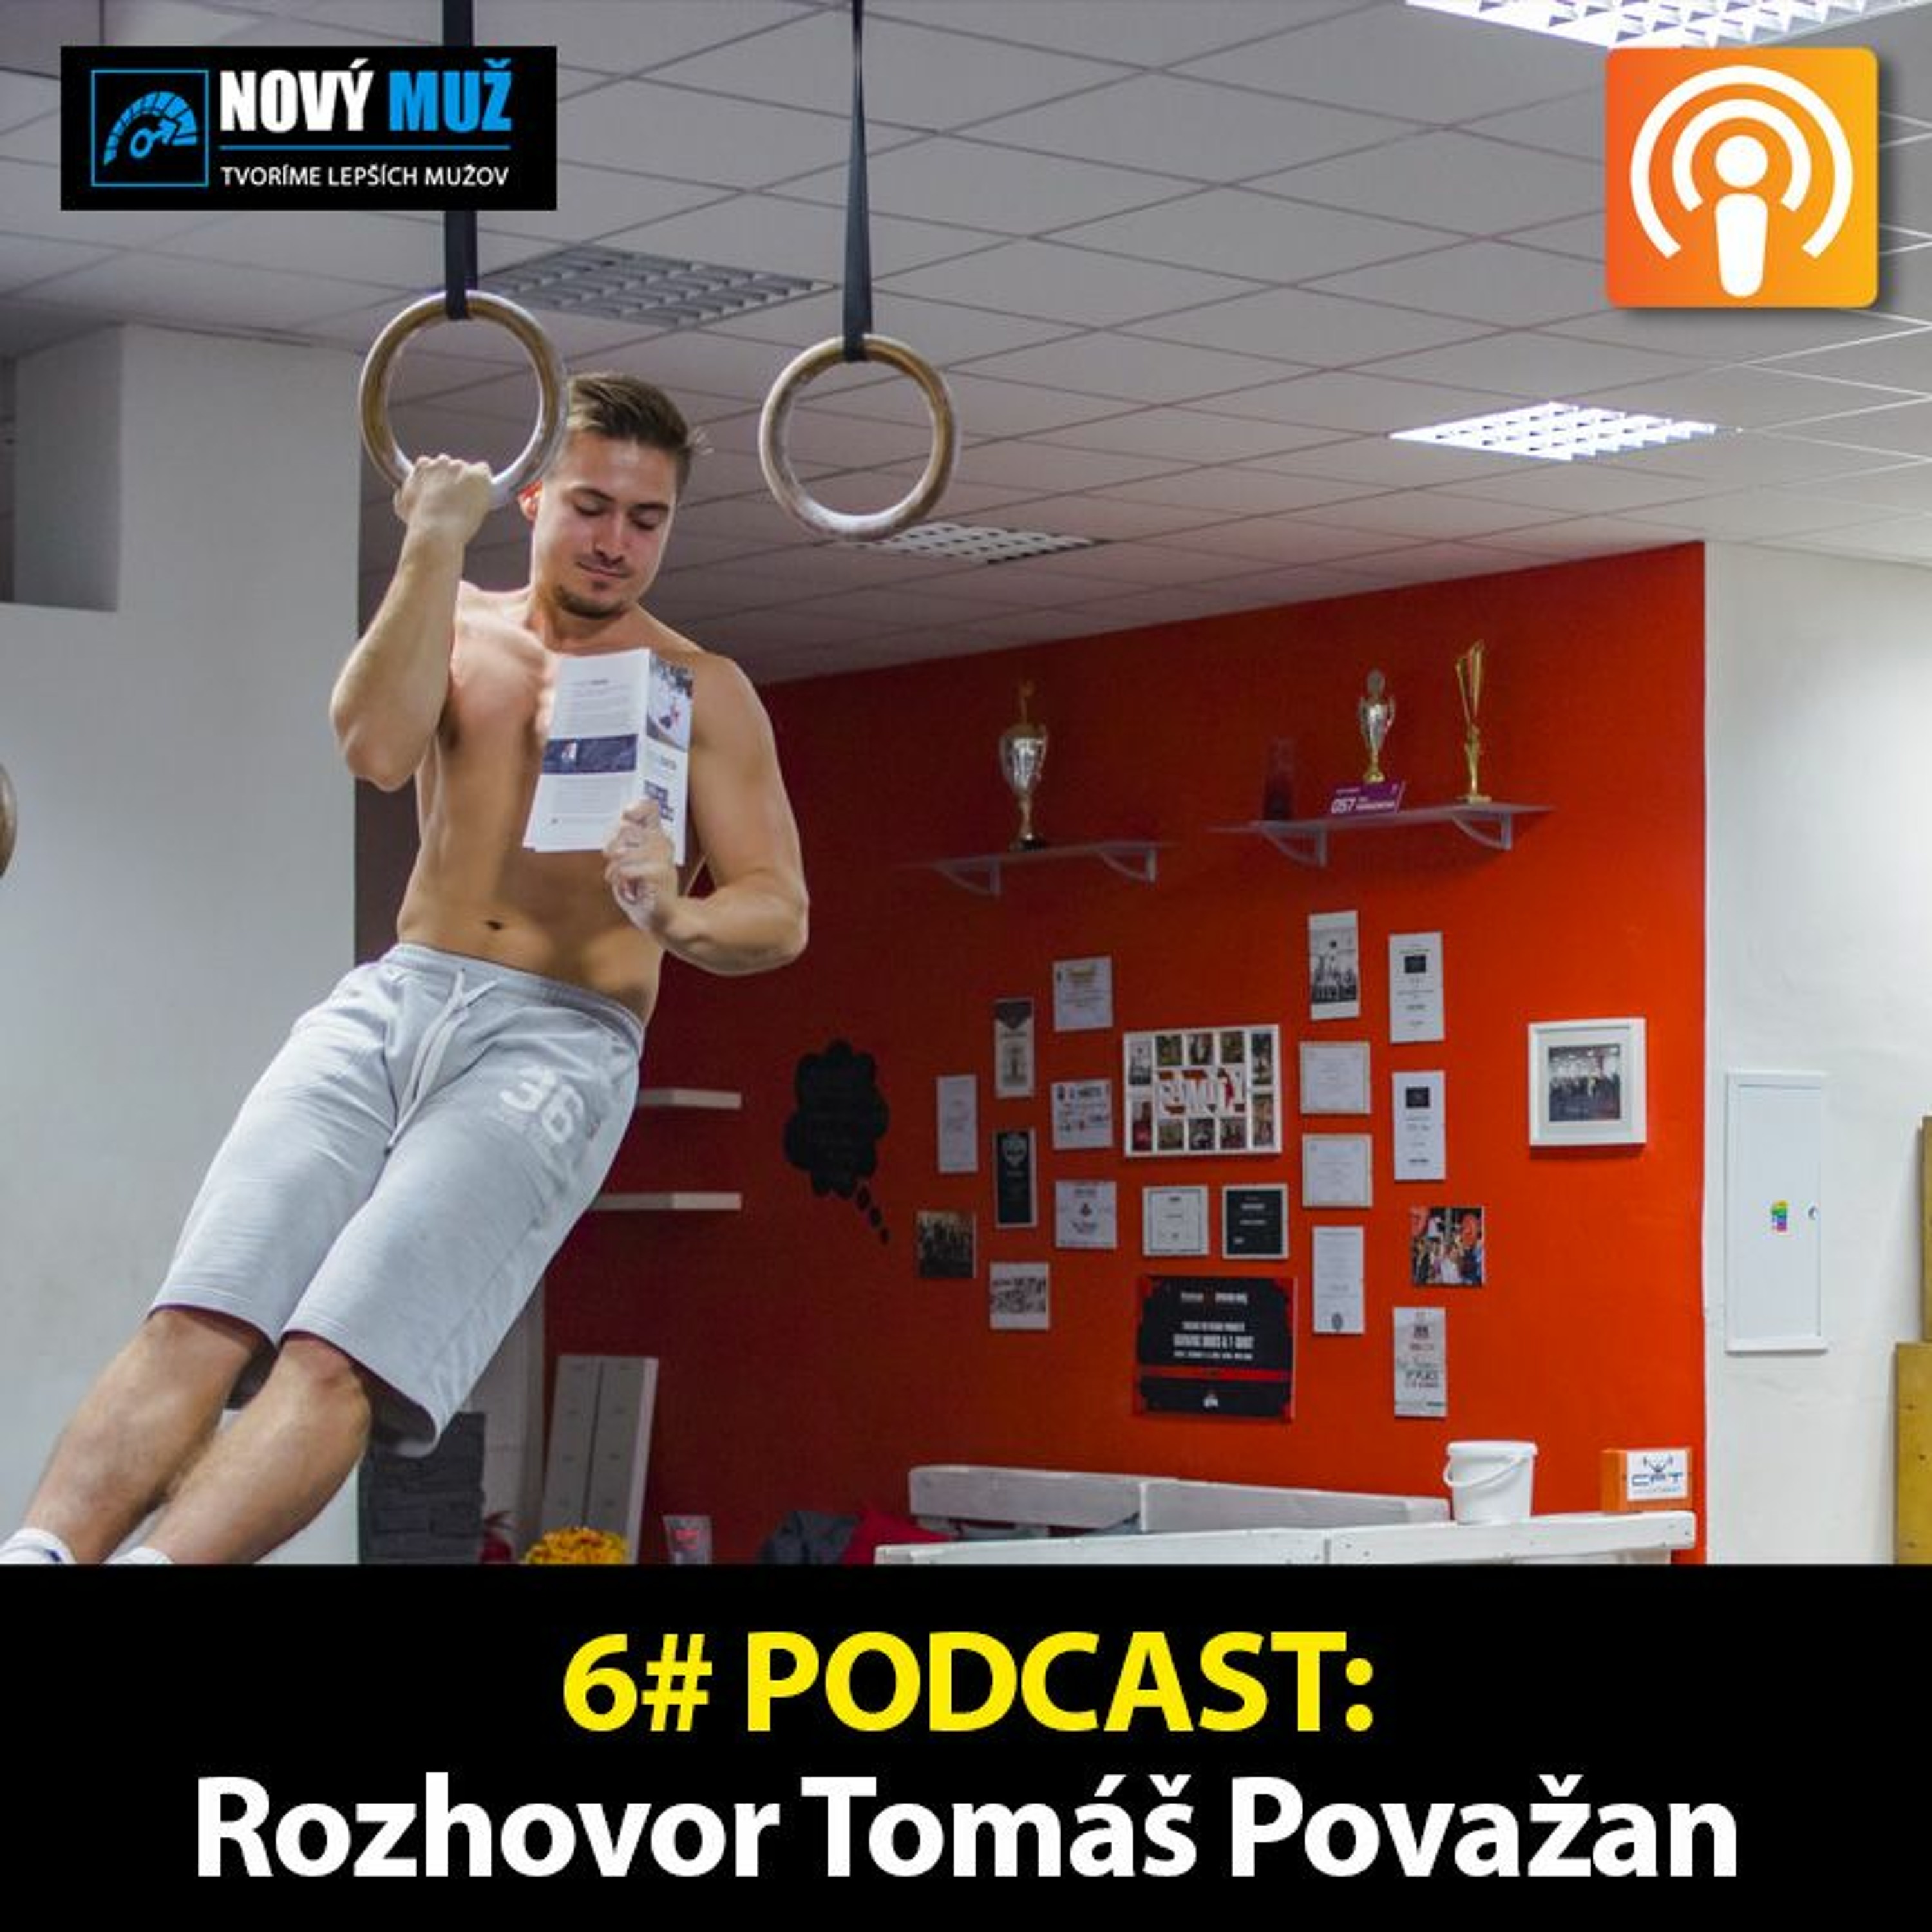 6# PODCAST – Rozhovor Tomáš Považan - Tréner, podnikateľ a manažér zdravia